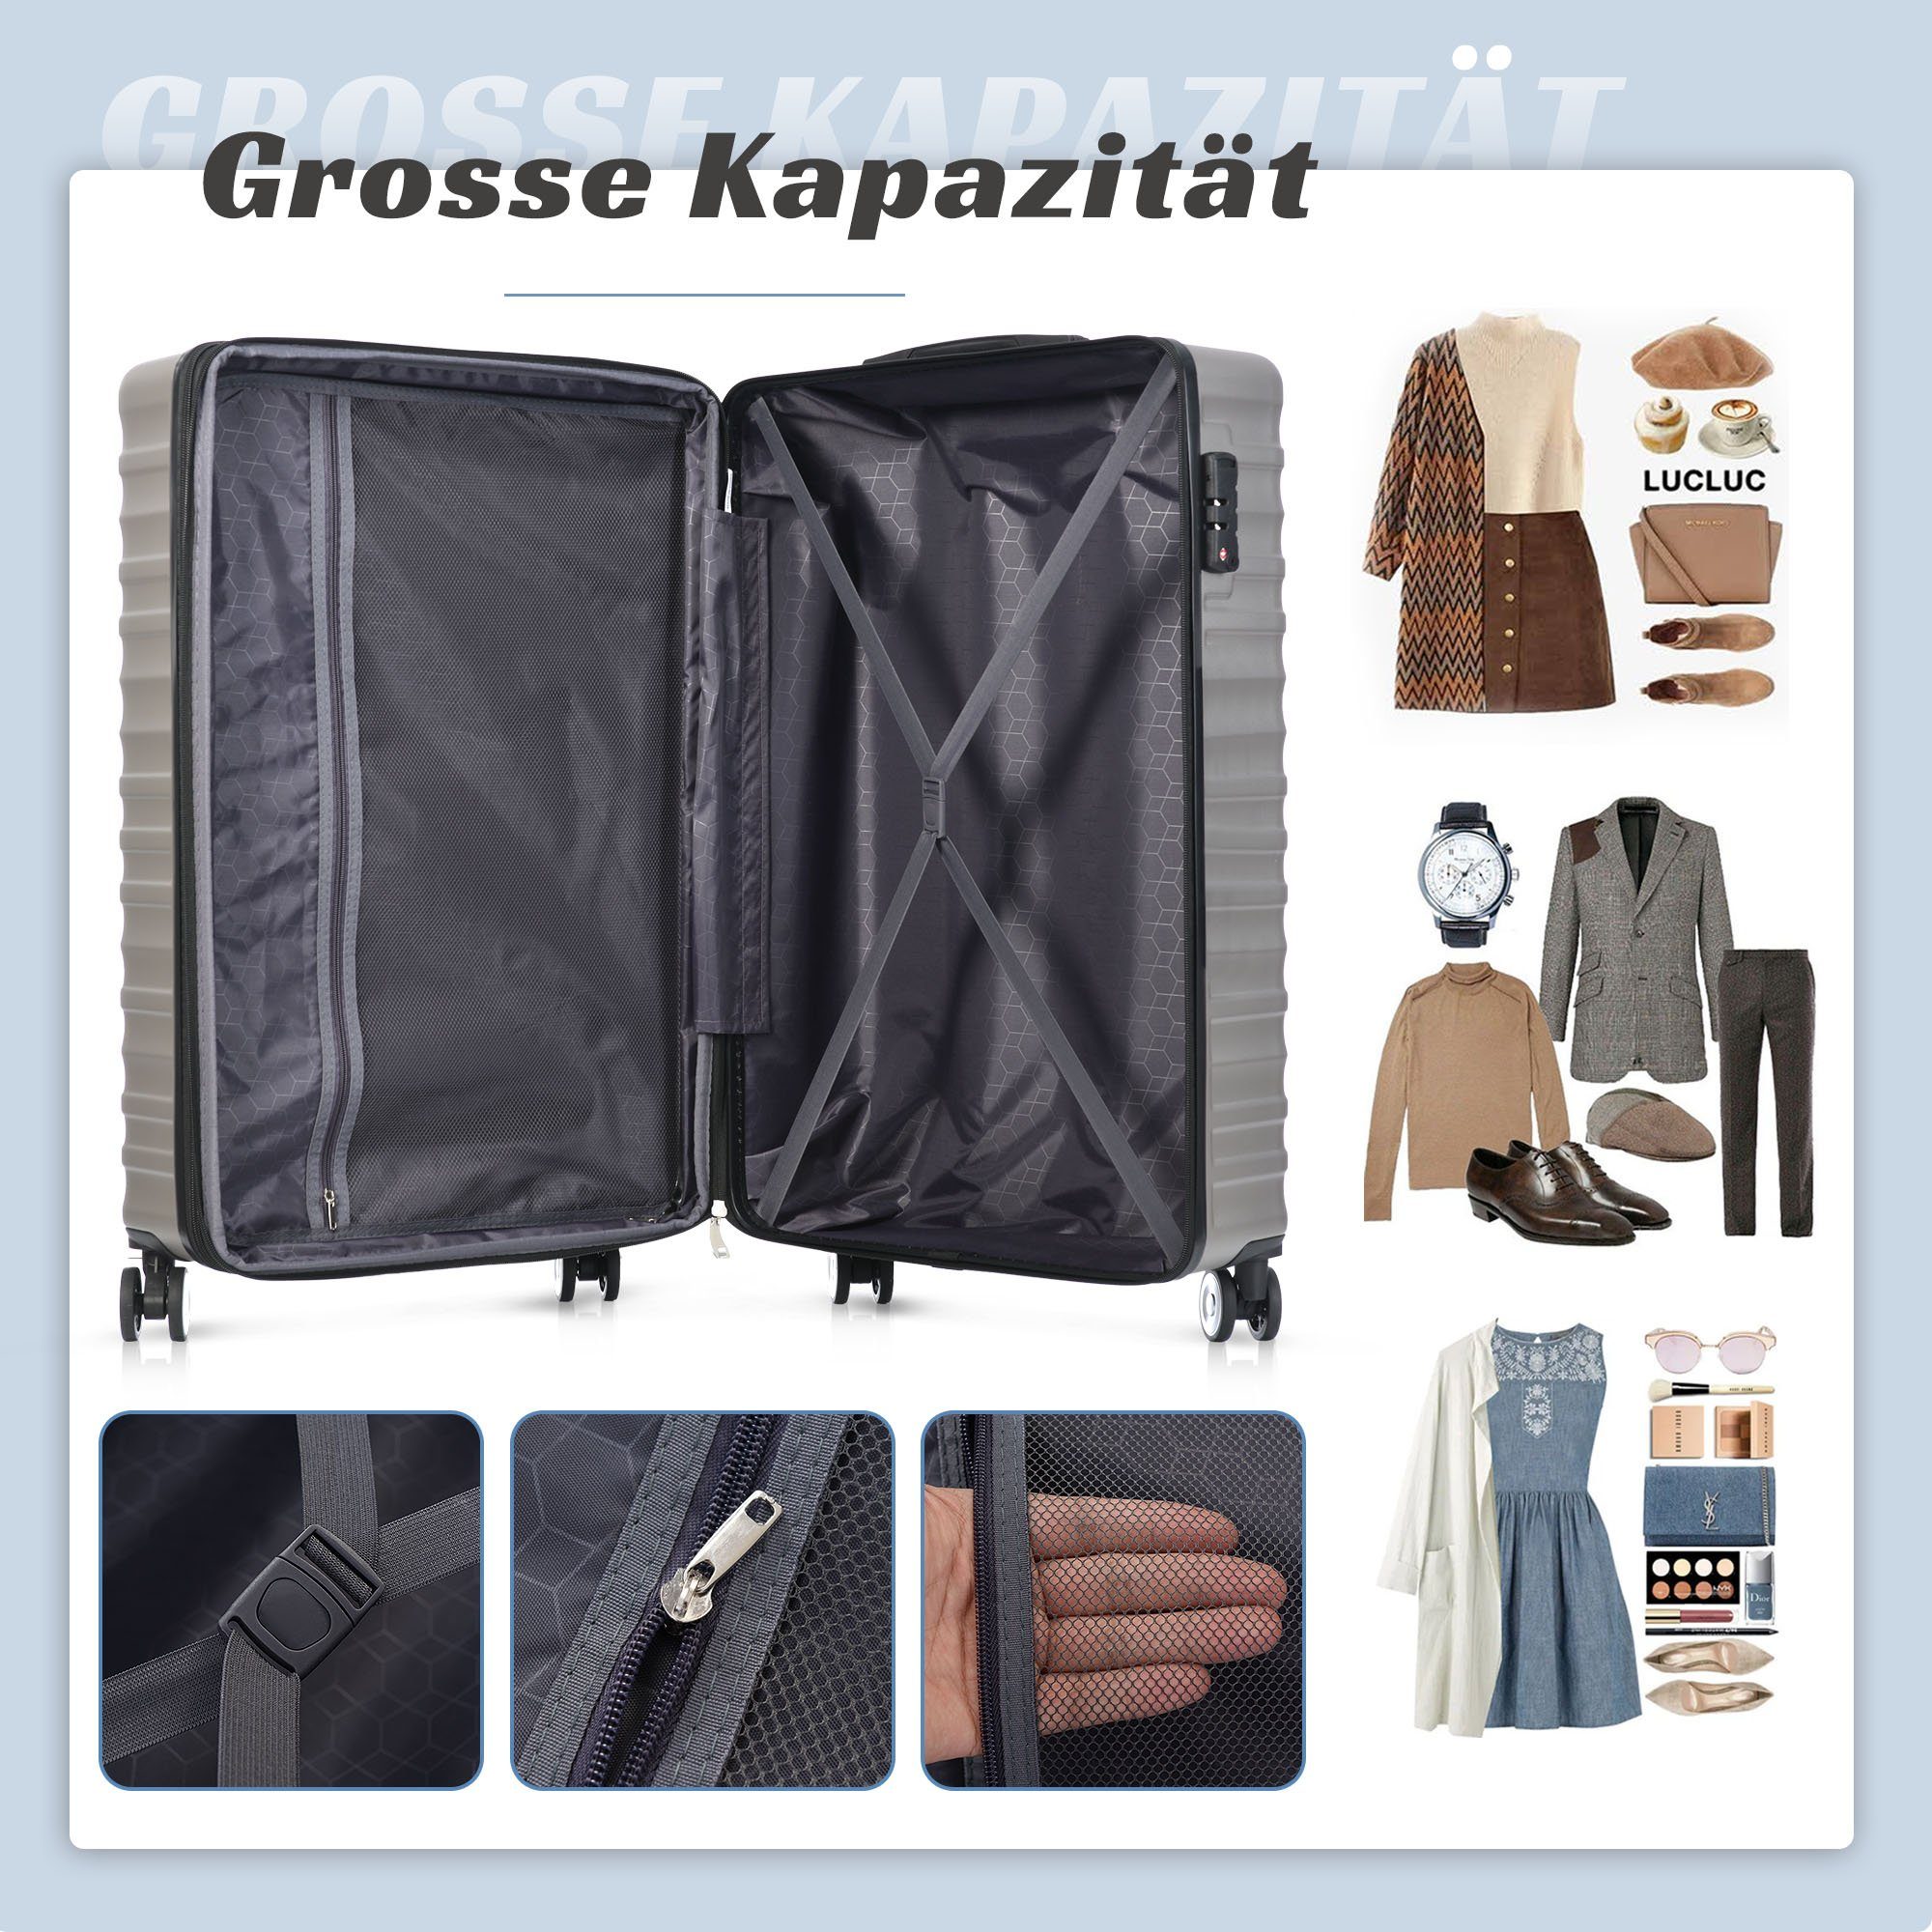 Hochwertiges Kapazität, OKWISH TSA-Schloss, Grau 4 Rollen 4 ABS-Gepäck, Handgepäckkoffer erweiterbare Räder,